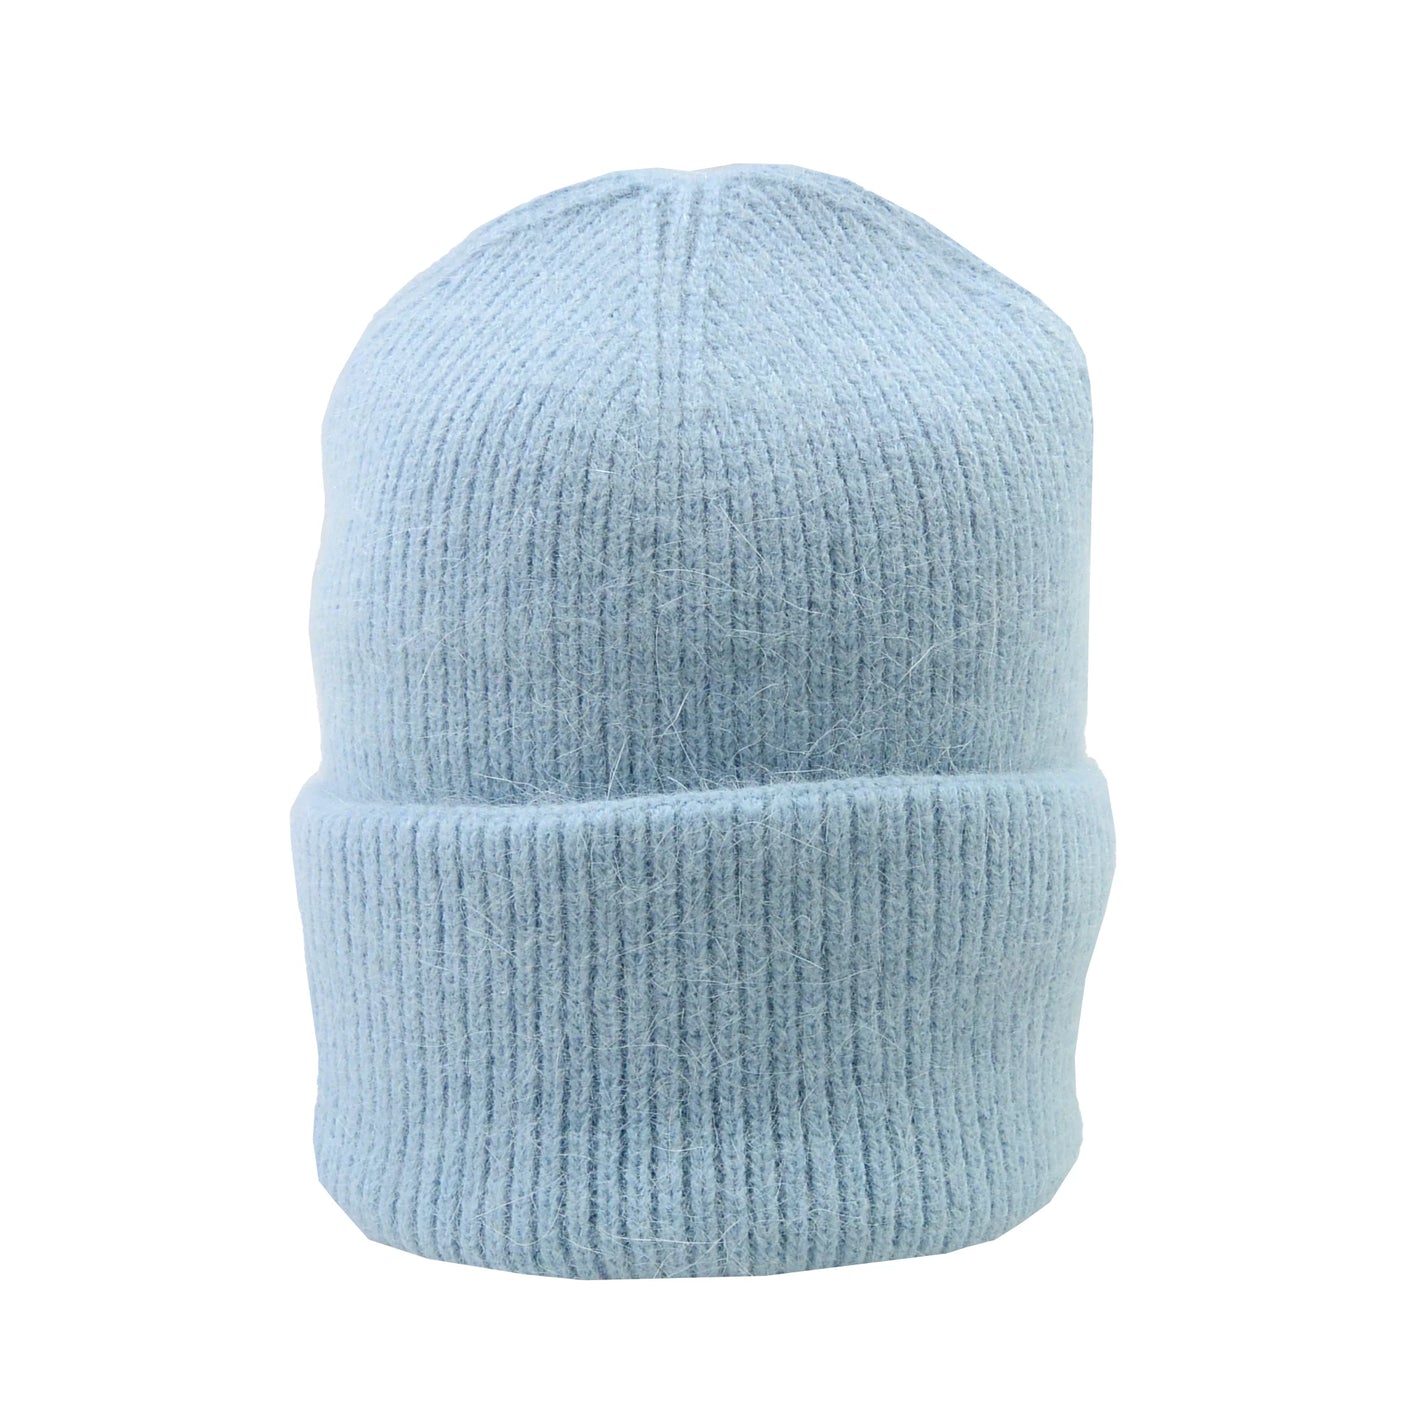 Long Beanie Mütze mit doppeltem Umschlag aus Wolle  Hellblau - Tucana 02